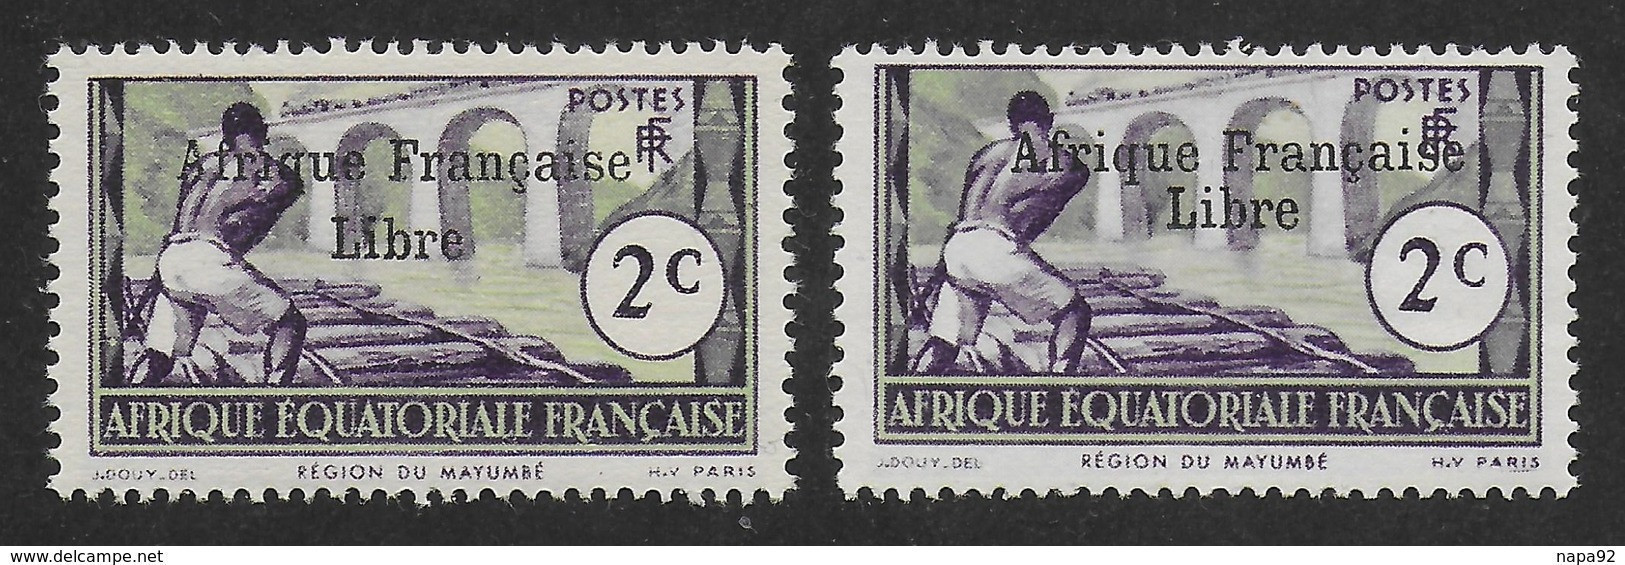 AFRIQUE EQUATORIALE FRANCAISE - AEF - A.E.F. - 1941 - YT 157** - 2ème TIRAGE - Ungebraucht